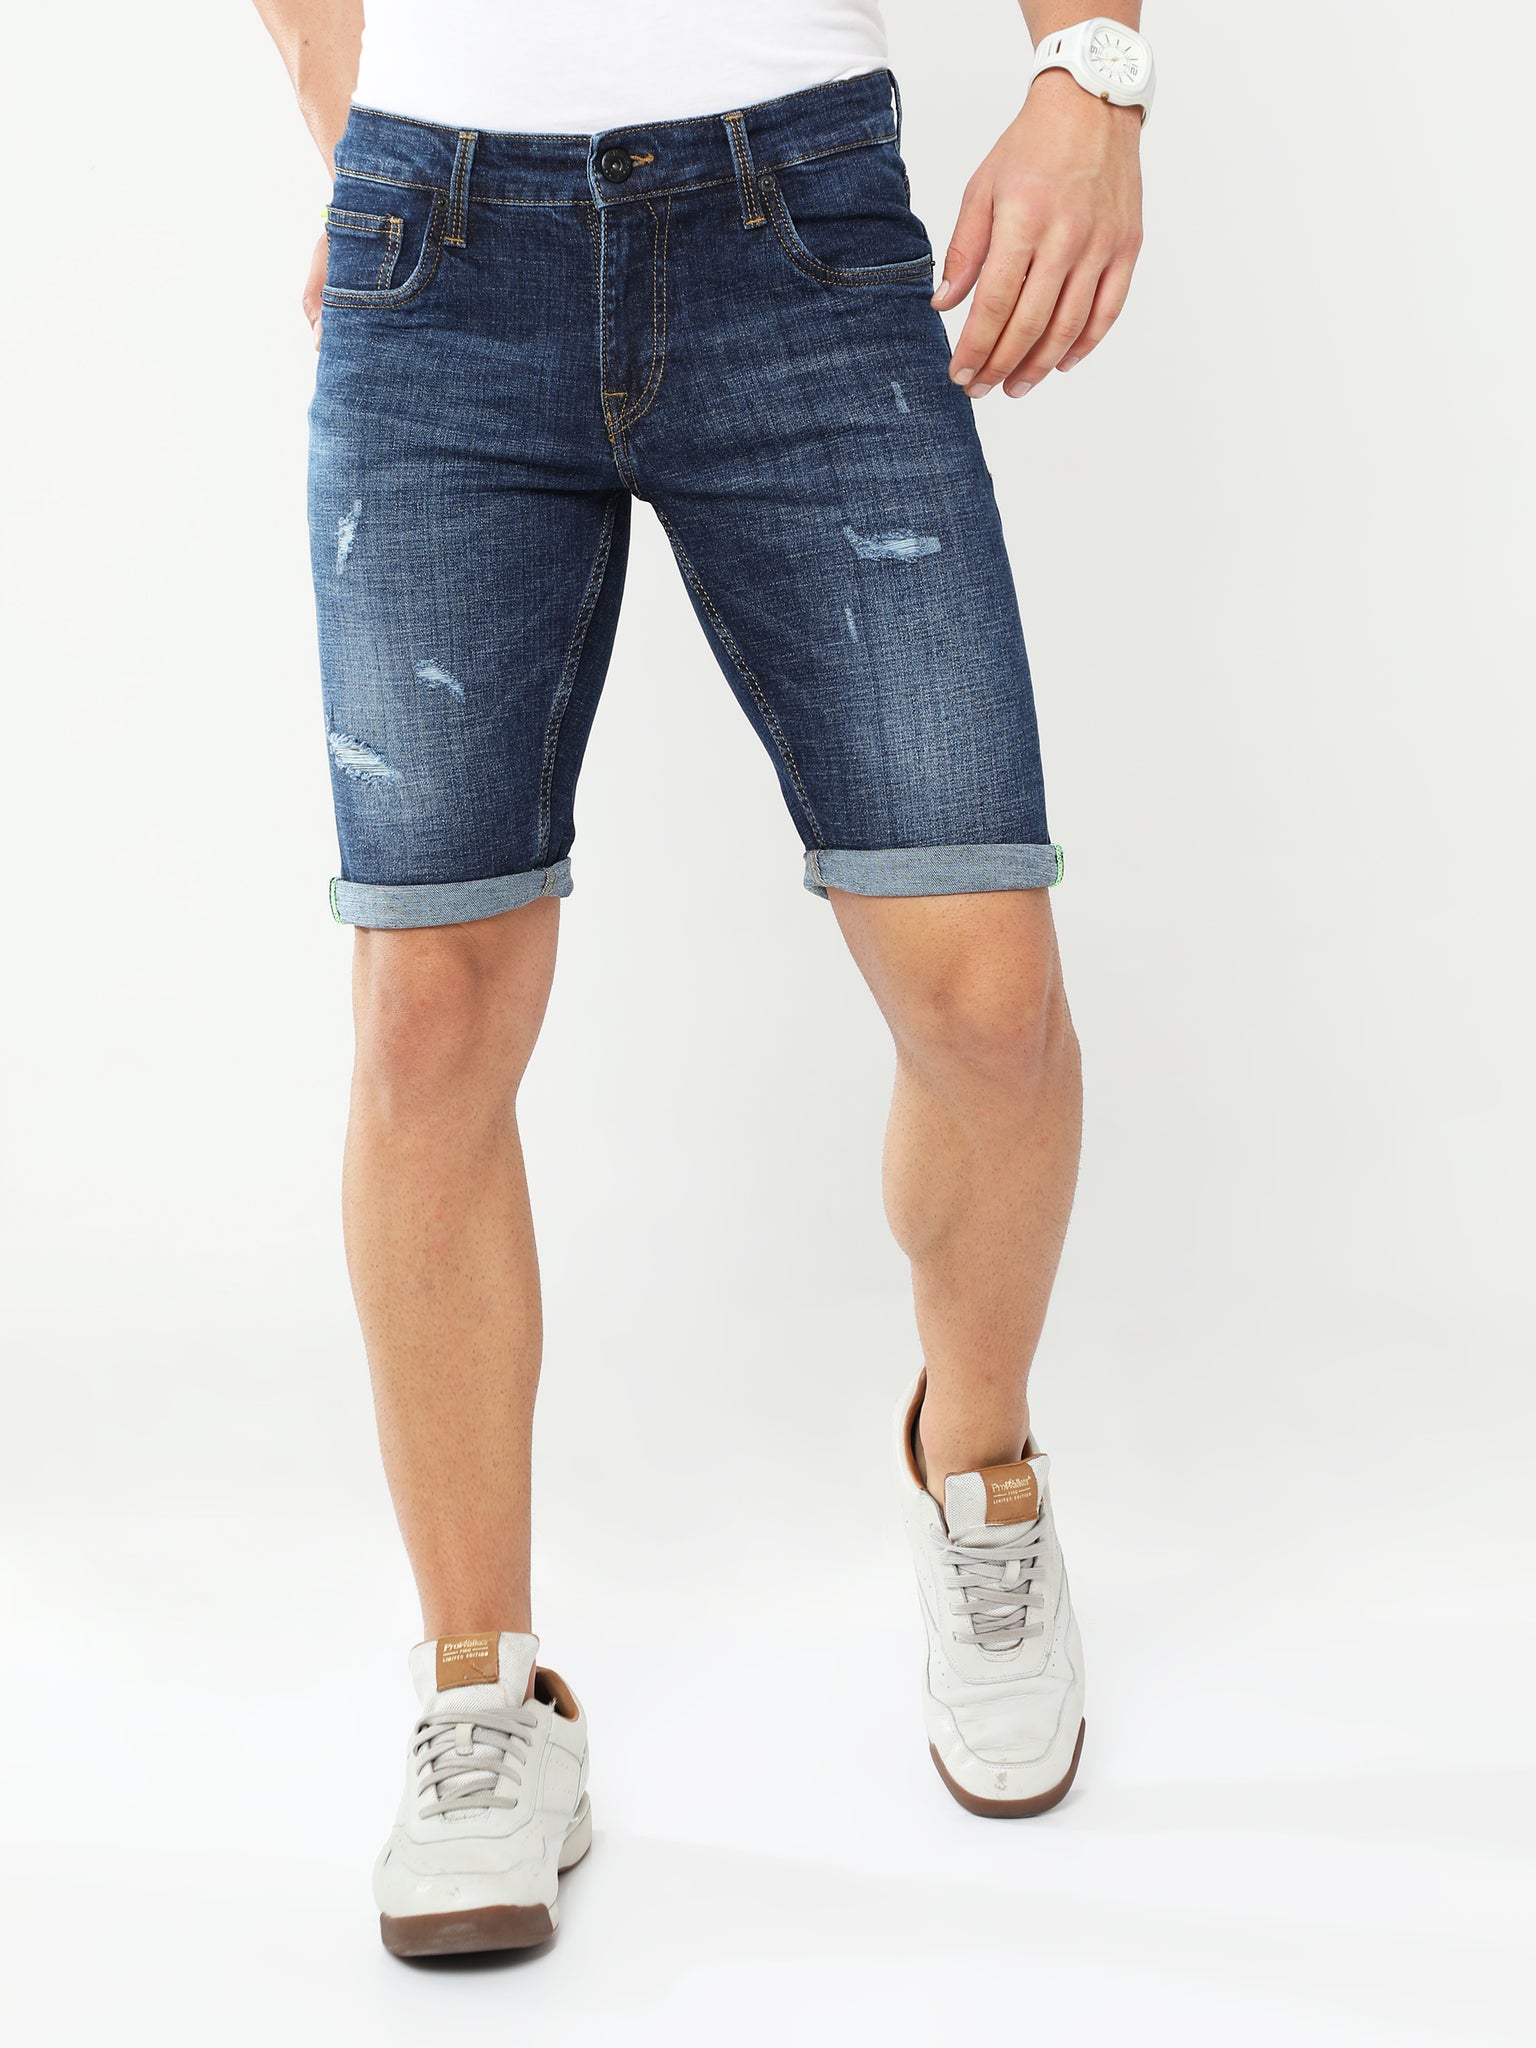 Aegean Blue Denim Shorts